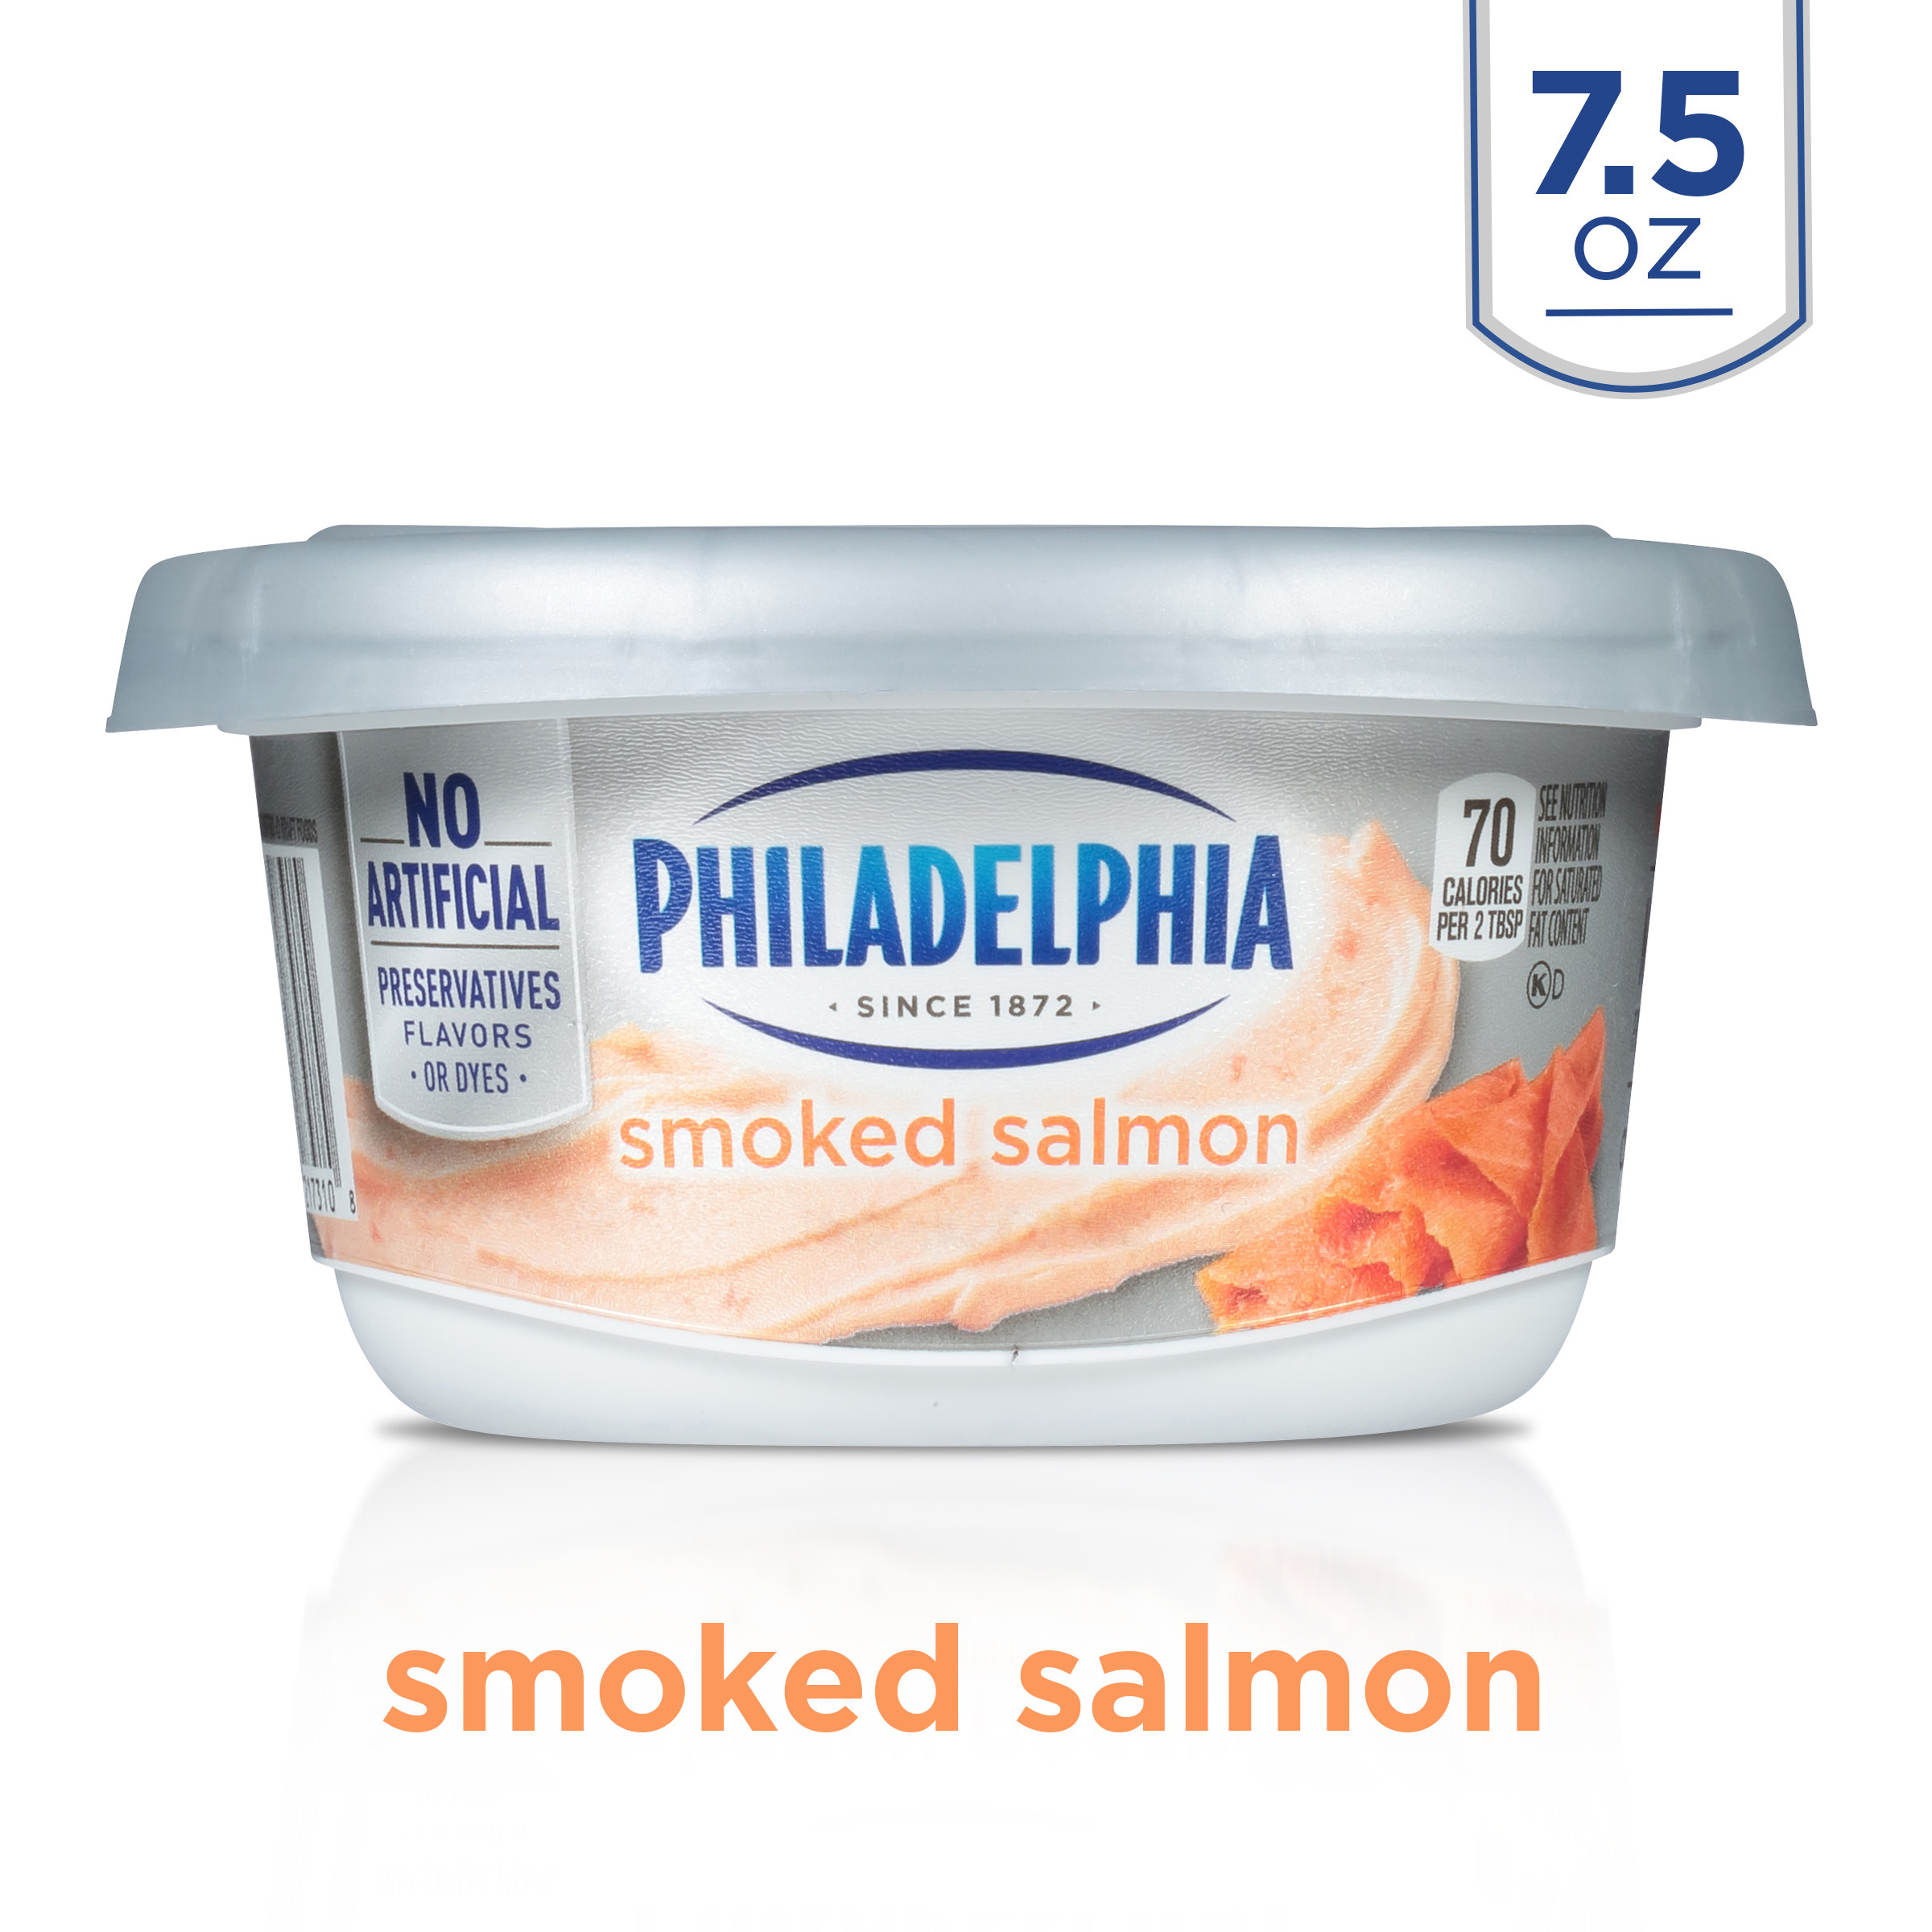 Smoked Salmon Walmart
 Philadelphia Smoked Salmon Cream Cheese Spread 7 5 oz